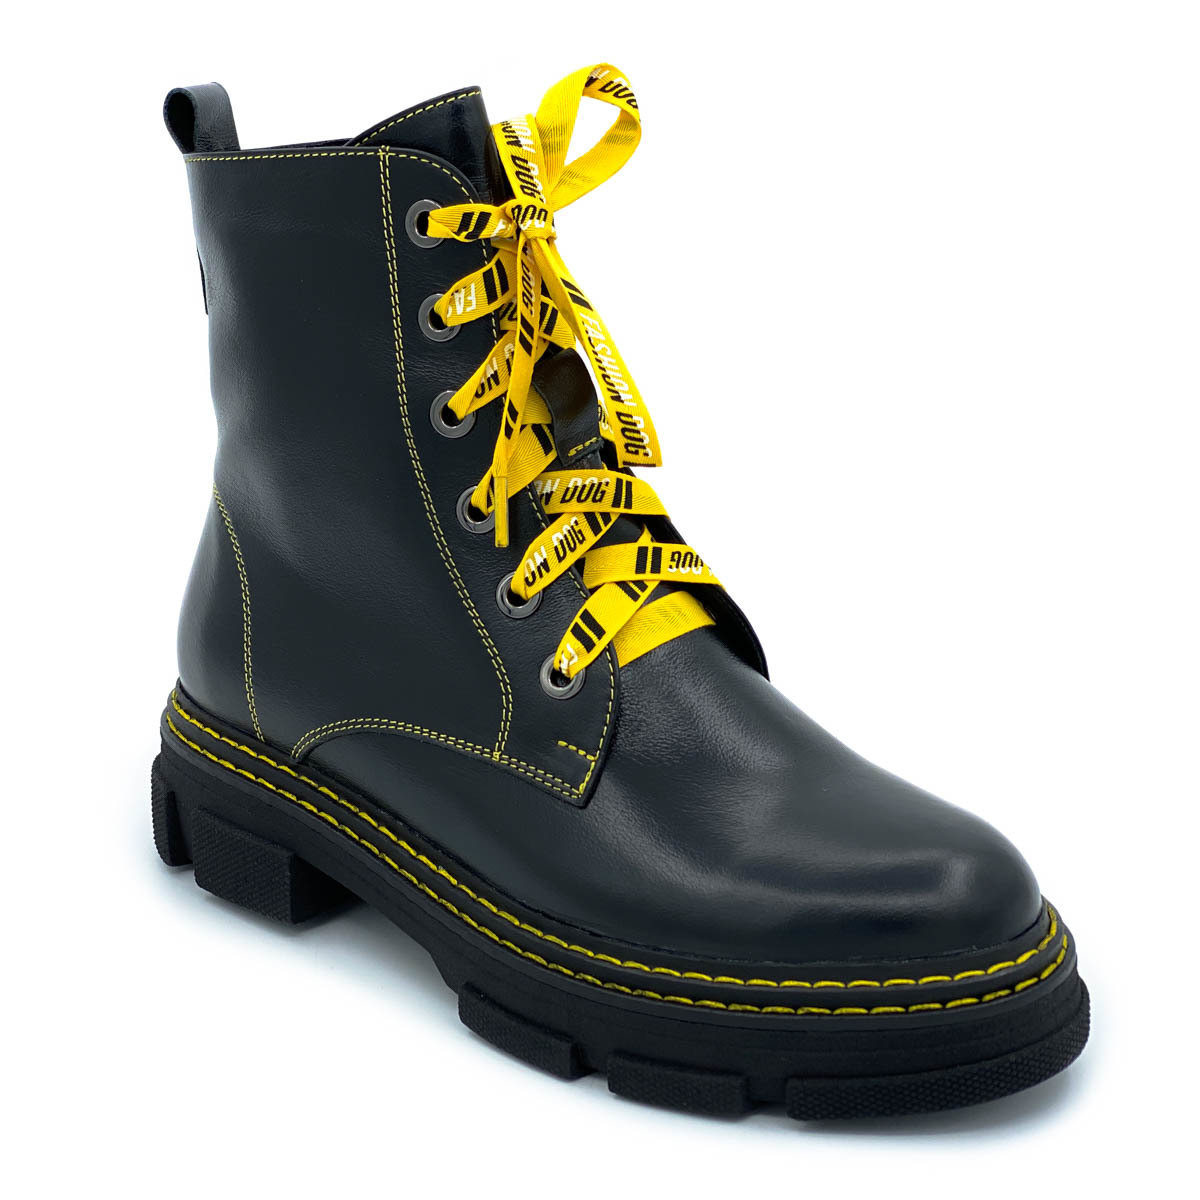 Ботинки Cover черно-желтые кожаные Байка 46782-1 COV – купить в  интернет-магазине rosso-nero.ru